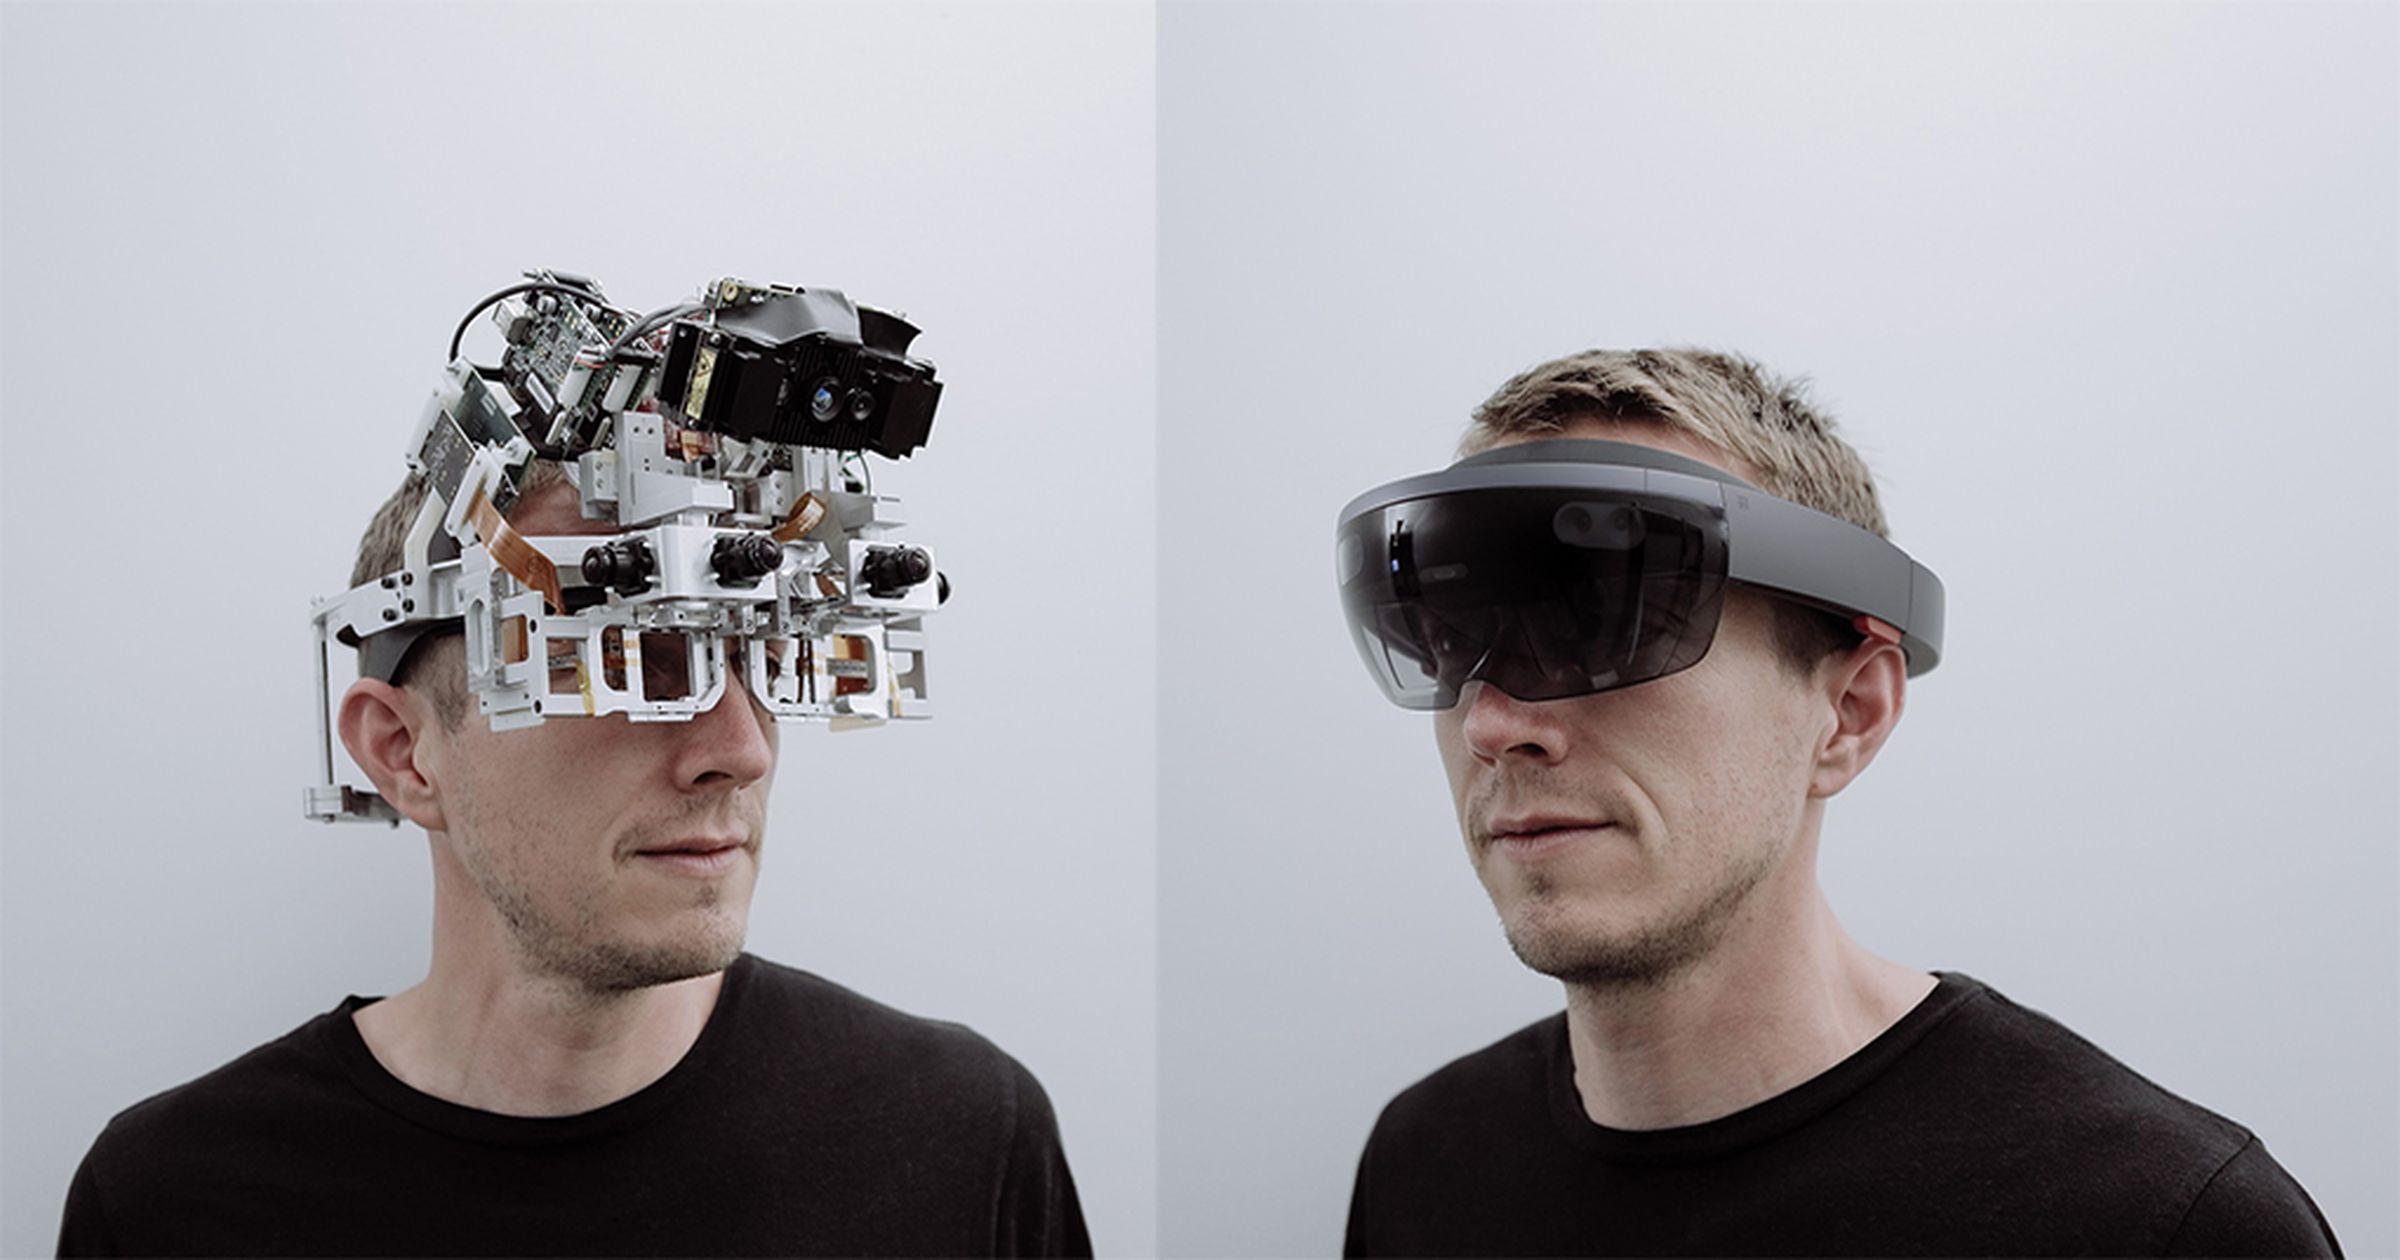 Microsoft HoloLens teardown photos